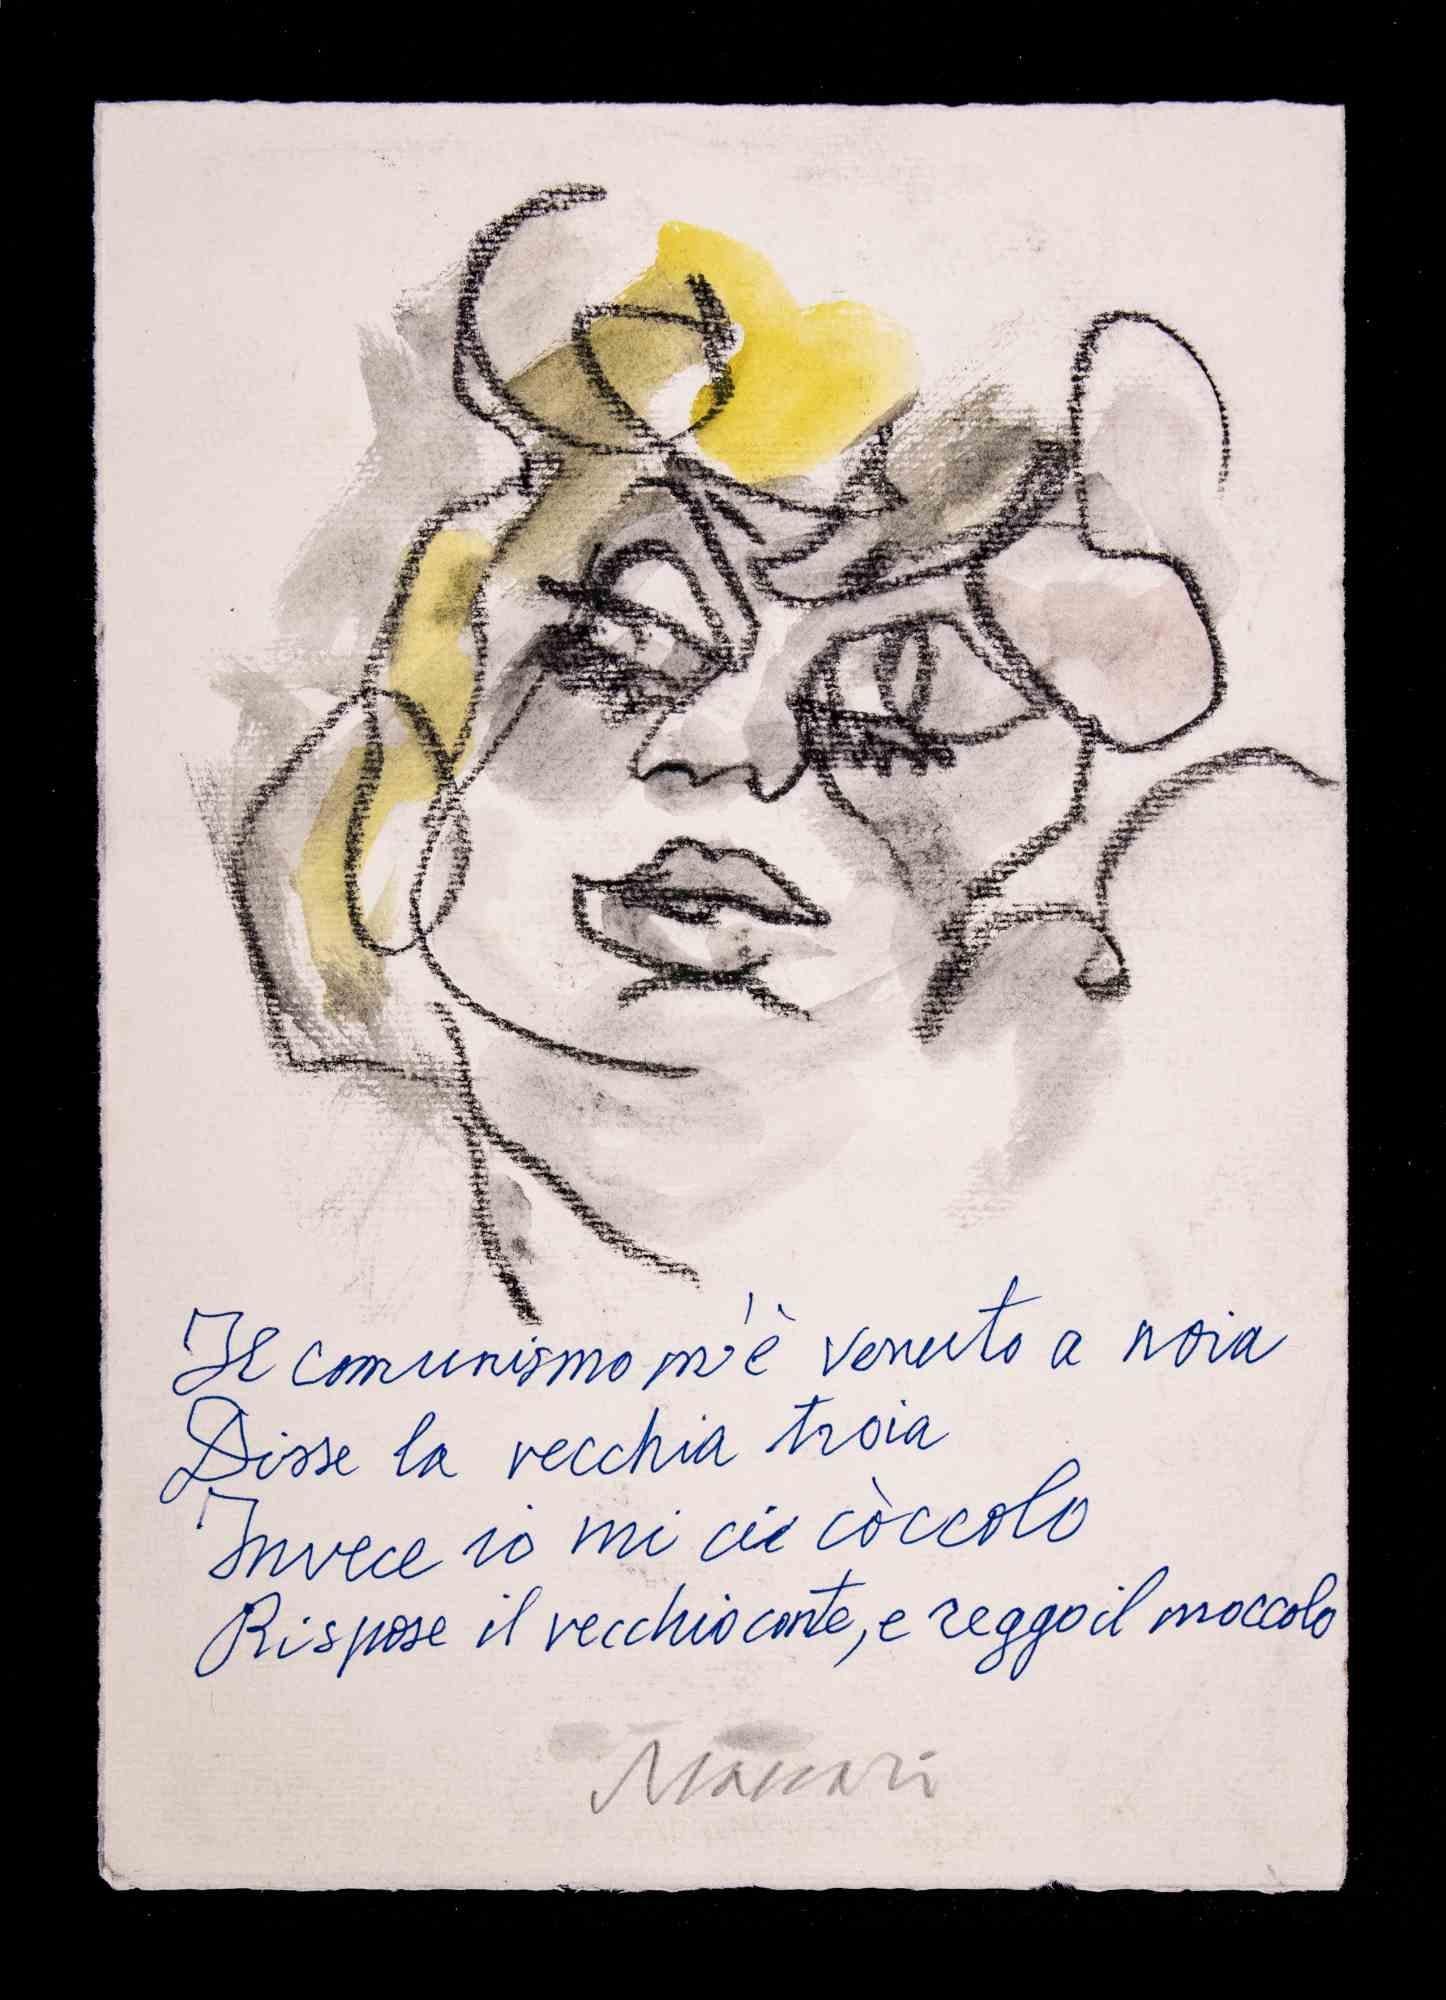 Communism Came to Me to Boredom ist eine Kohle und Aquarell Zeichnung und Pastell realisiert von Mino Maccari  (1924-1989) in den 1980er Jahren.

Handsigniert am unteren Rand.

Guter Zustand auf einer kleinen Pappe.

Mino Maccari (Siena, 1924-Rom,